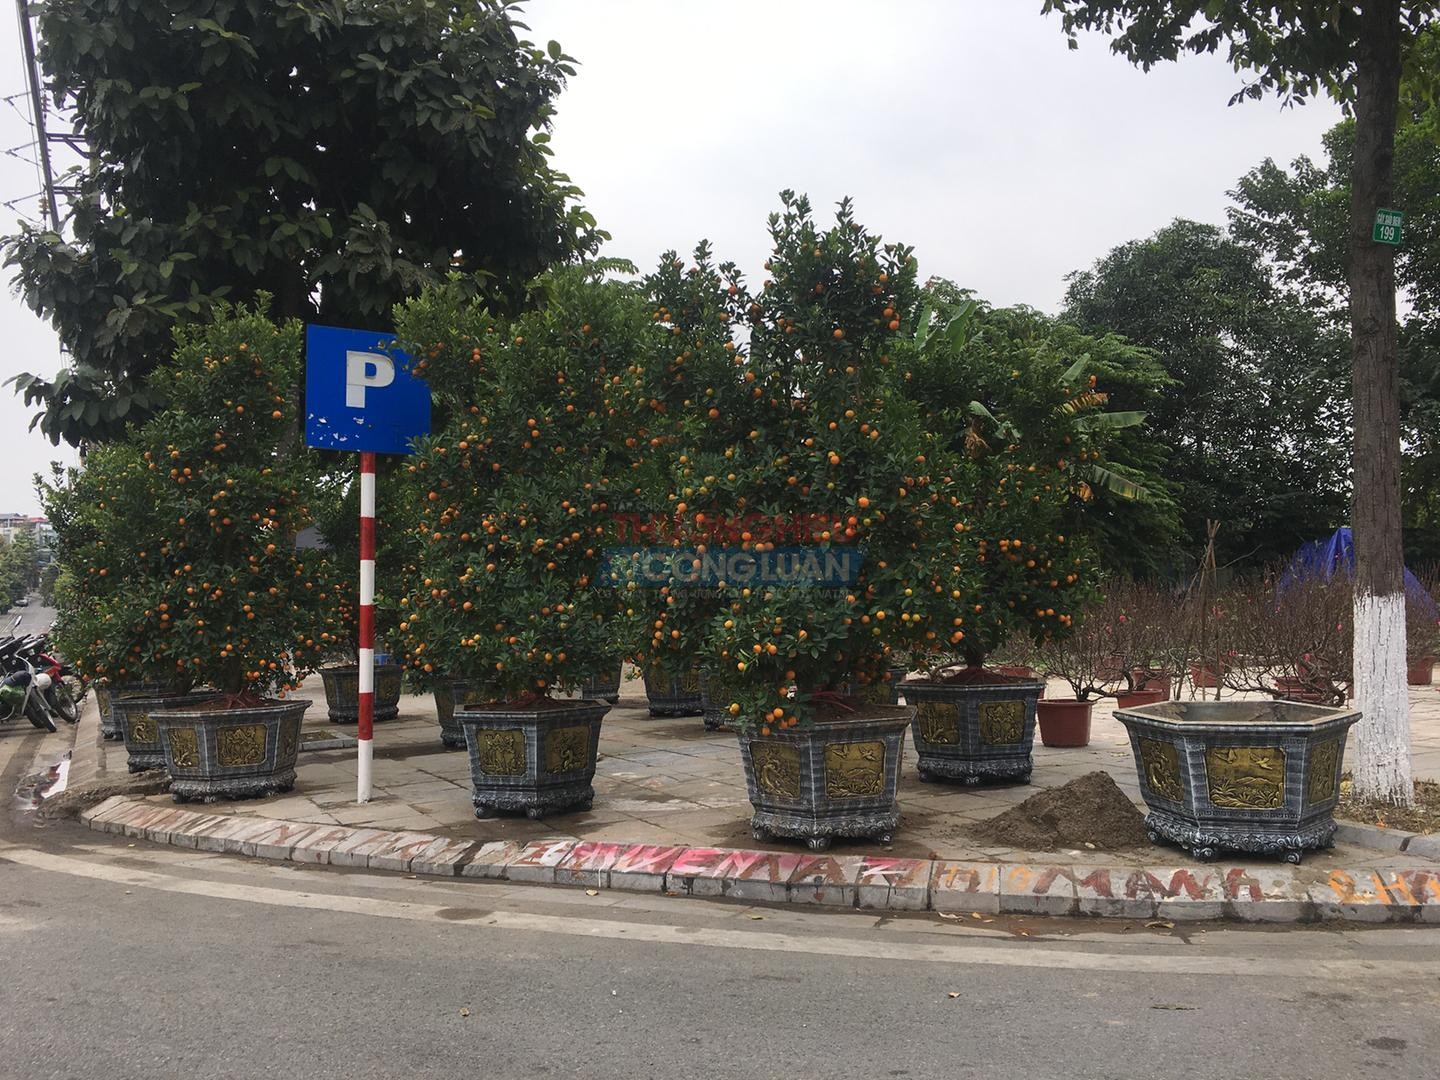 Hàng chục cây quất bonsai được bán trên đường Huyền Quang